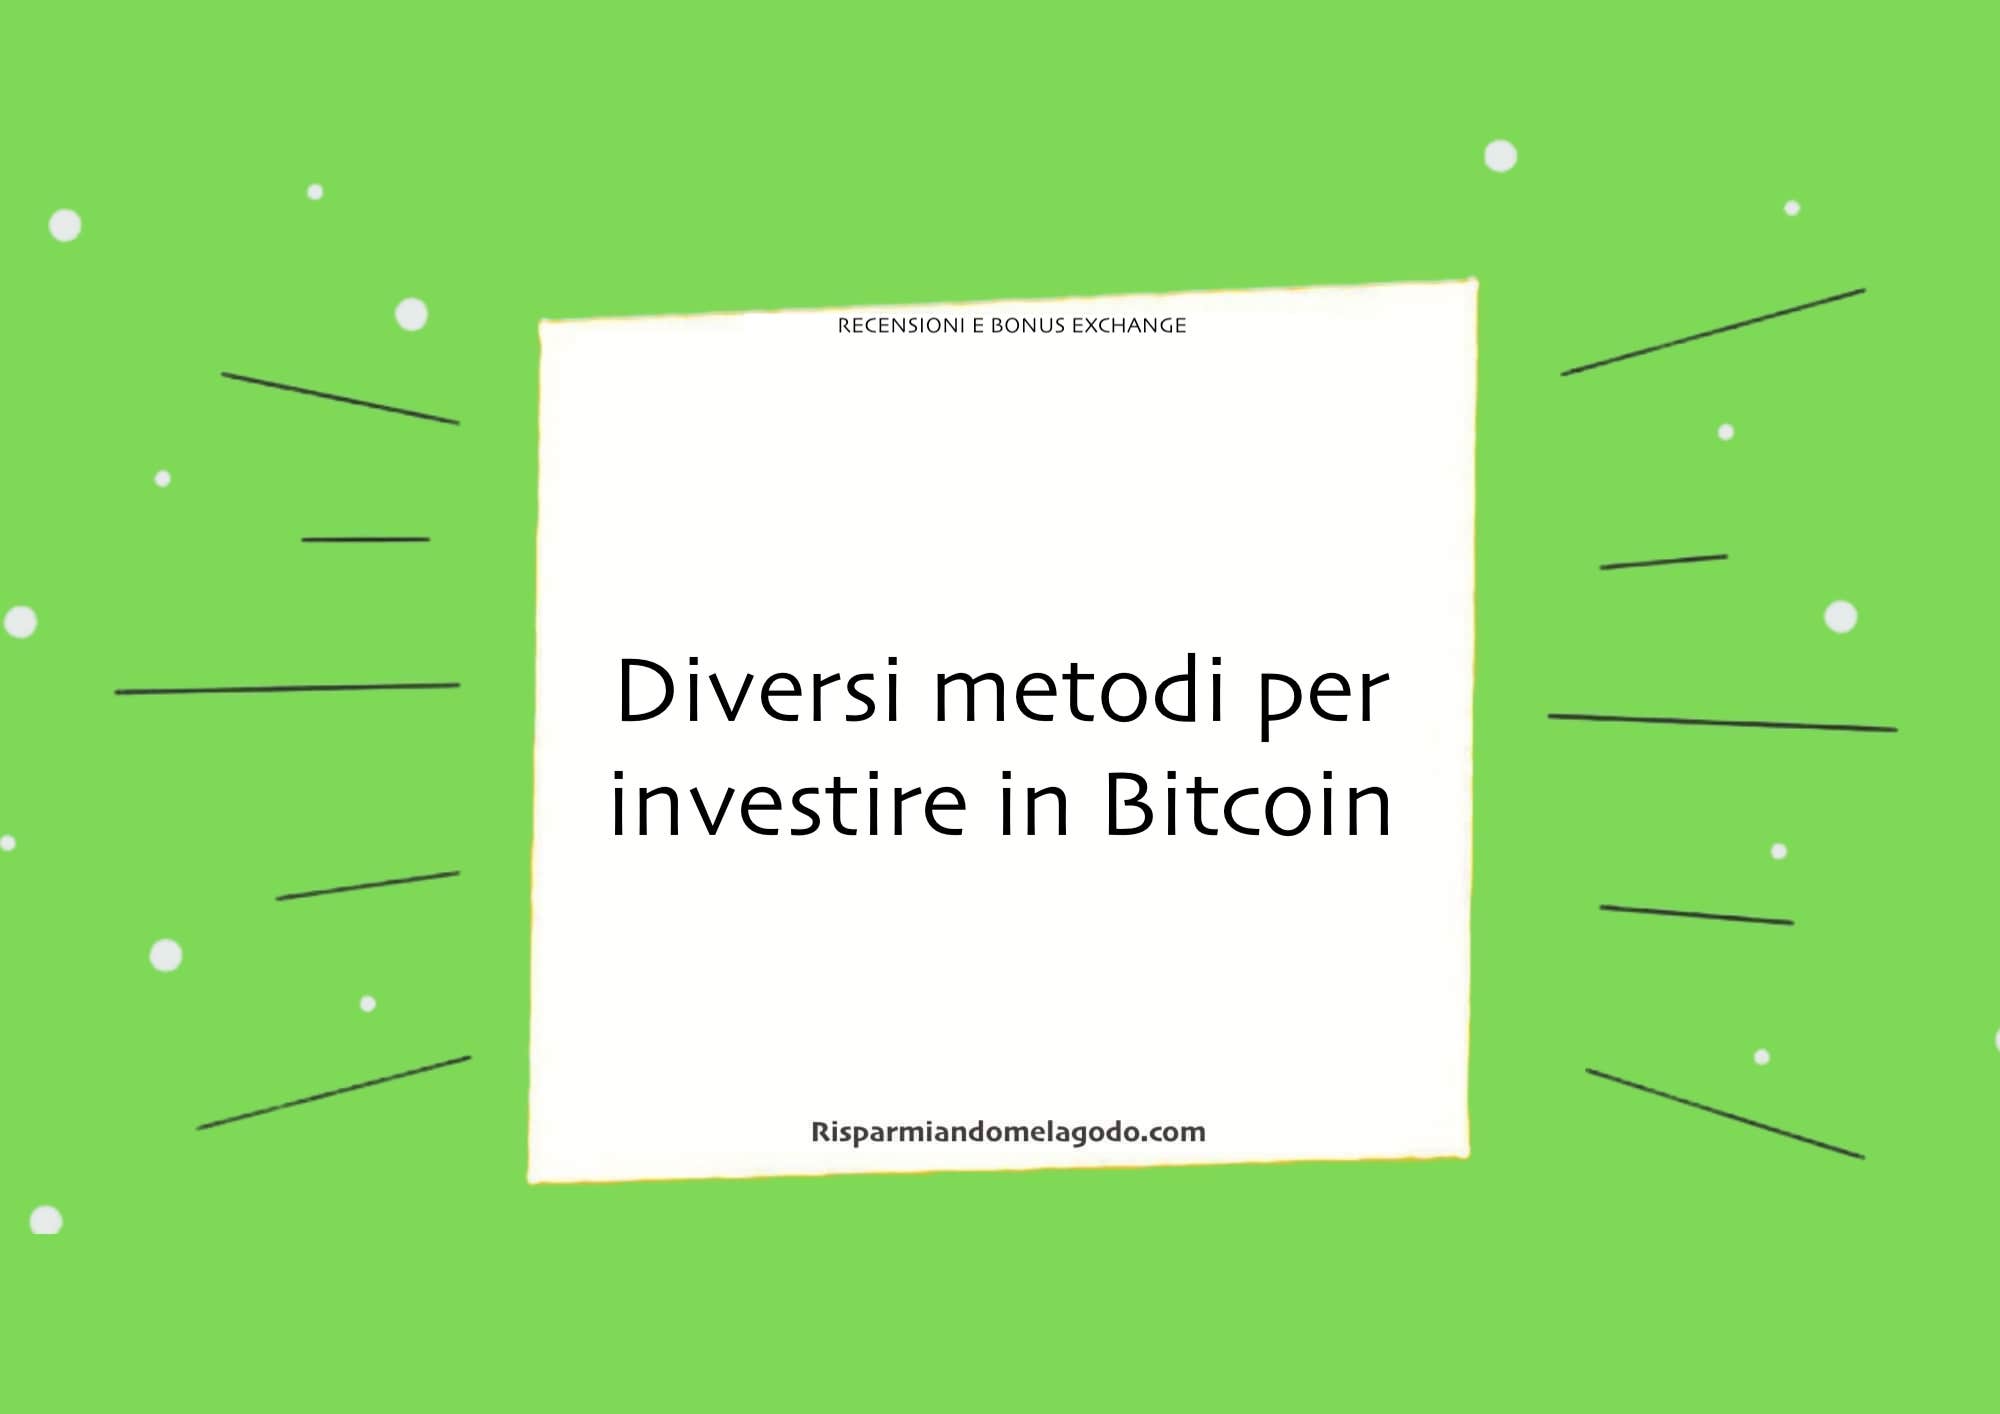 Diversi metodi per investire in Bitcoin